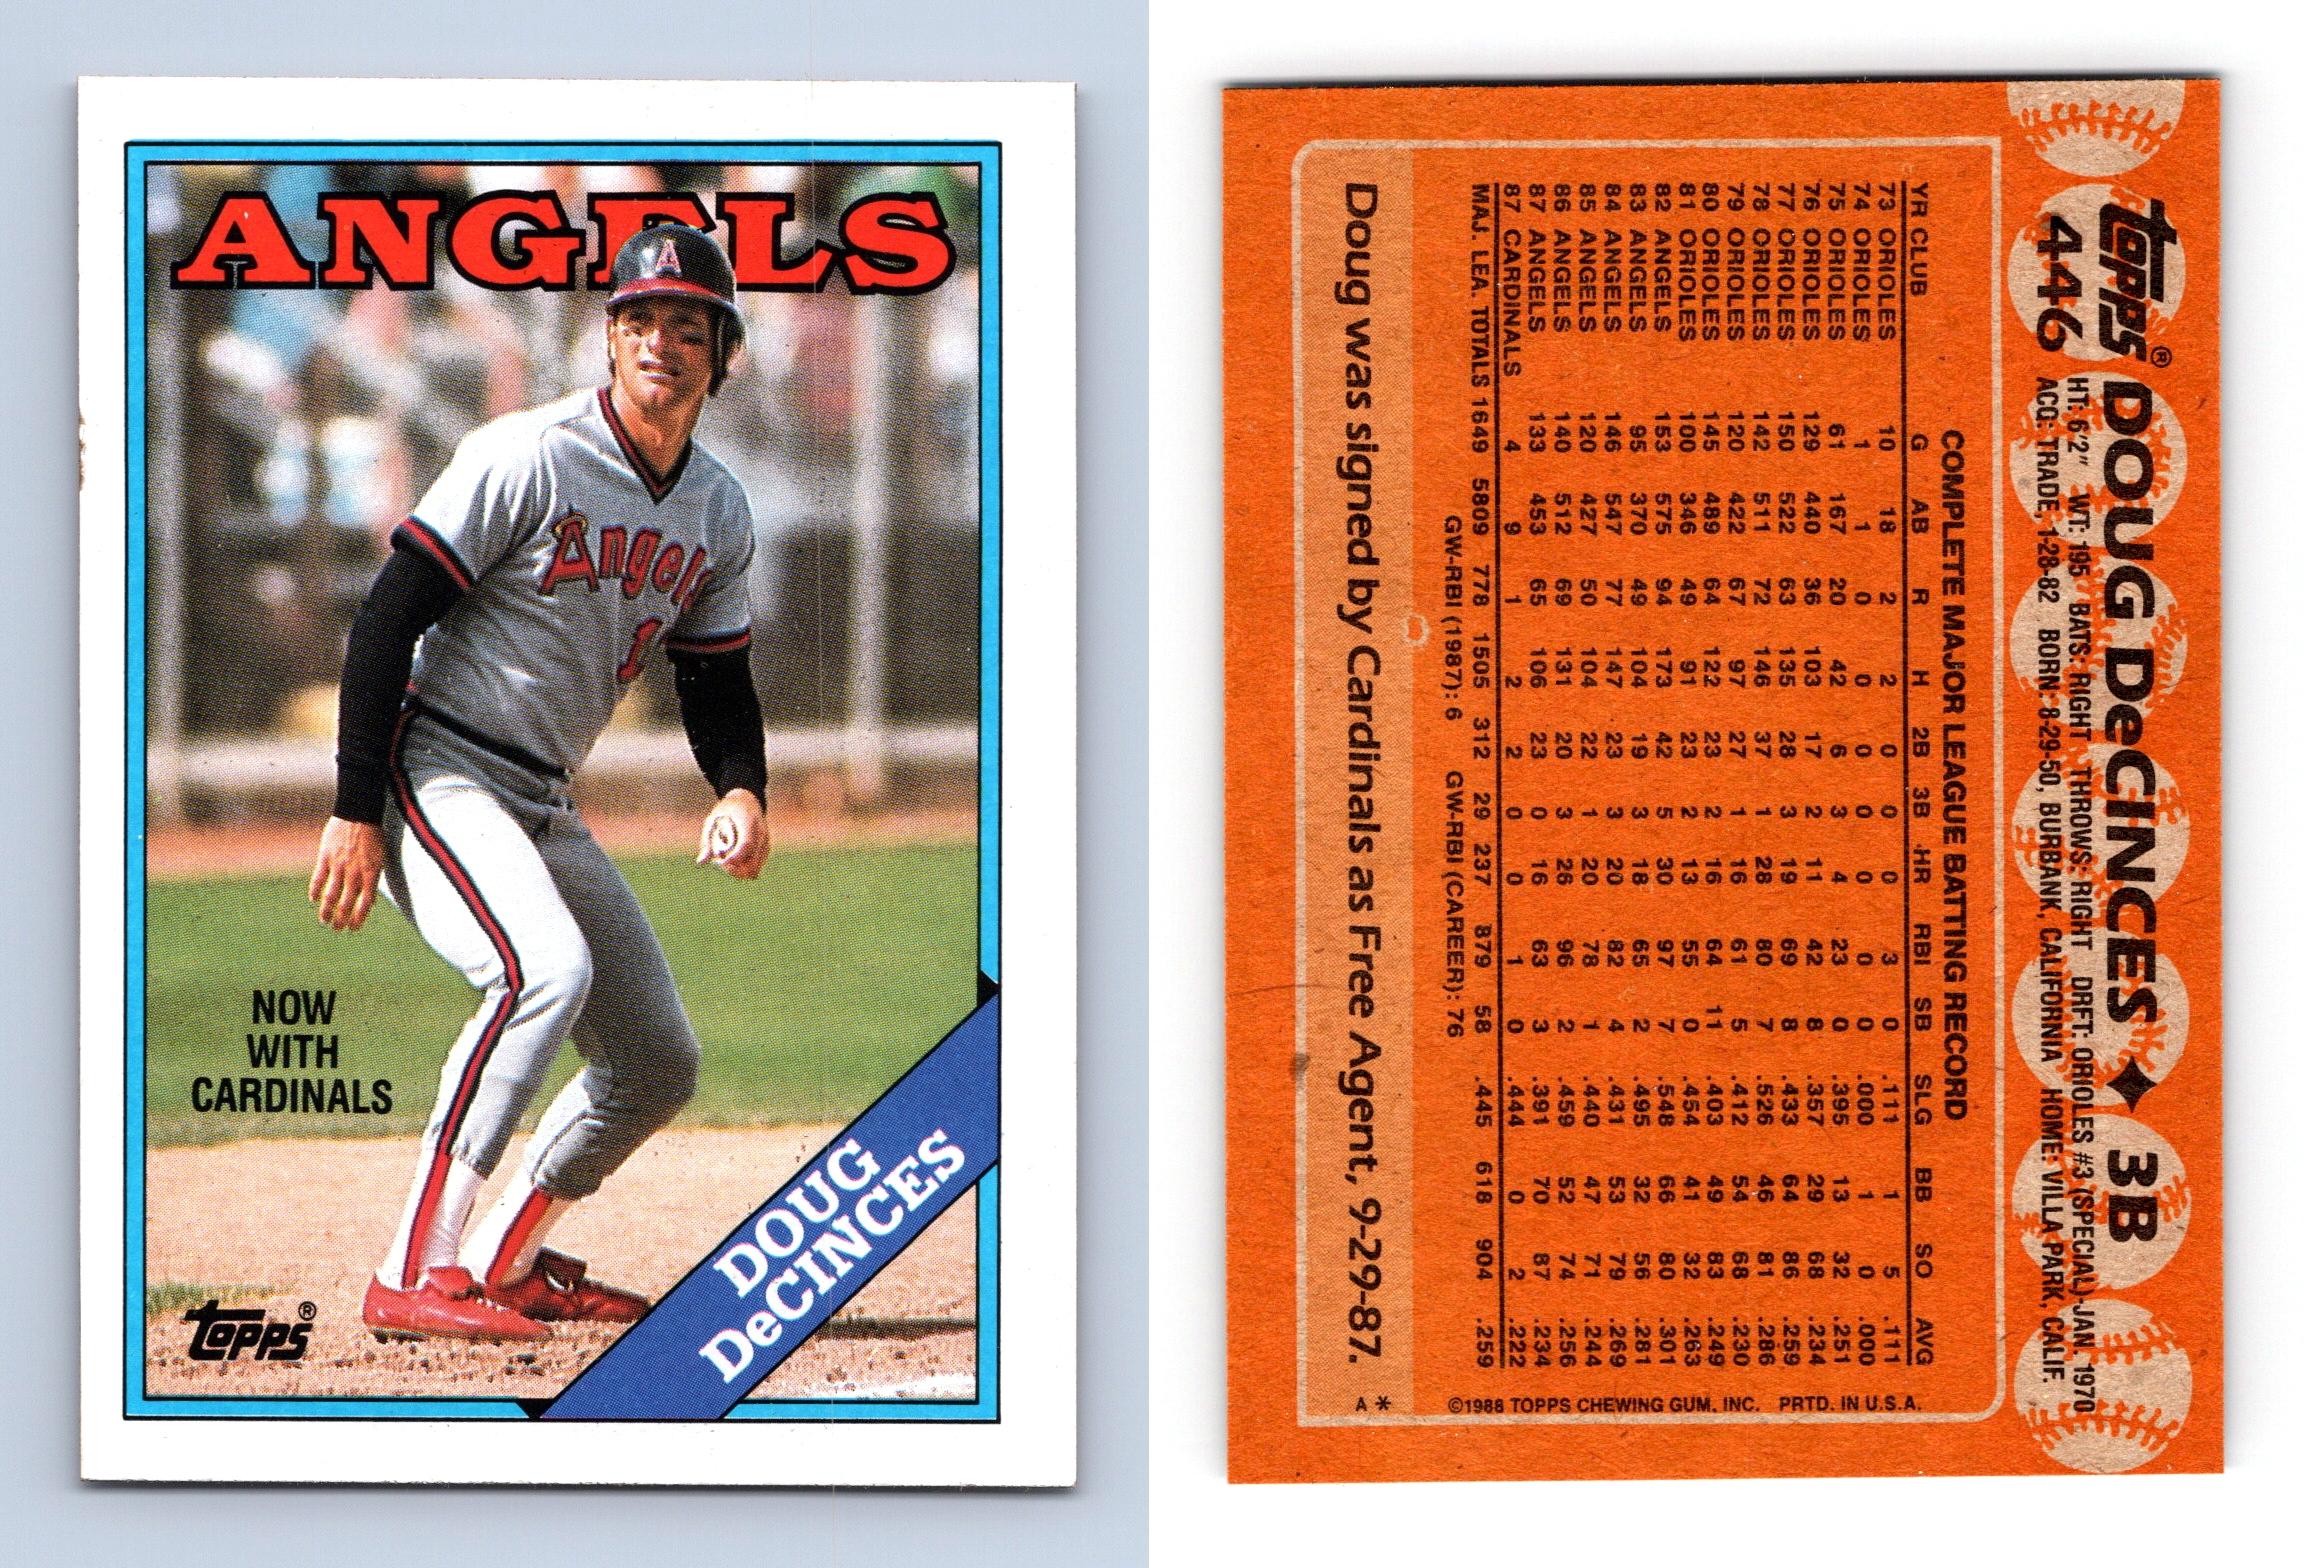 1988 Topps Pedro Guerrero #550 Baseball Card